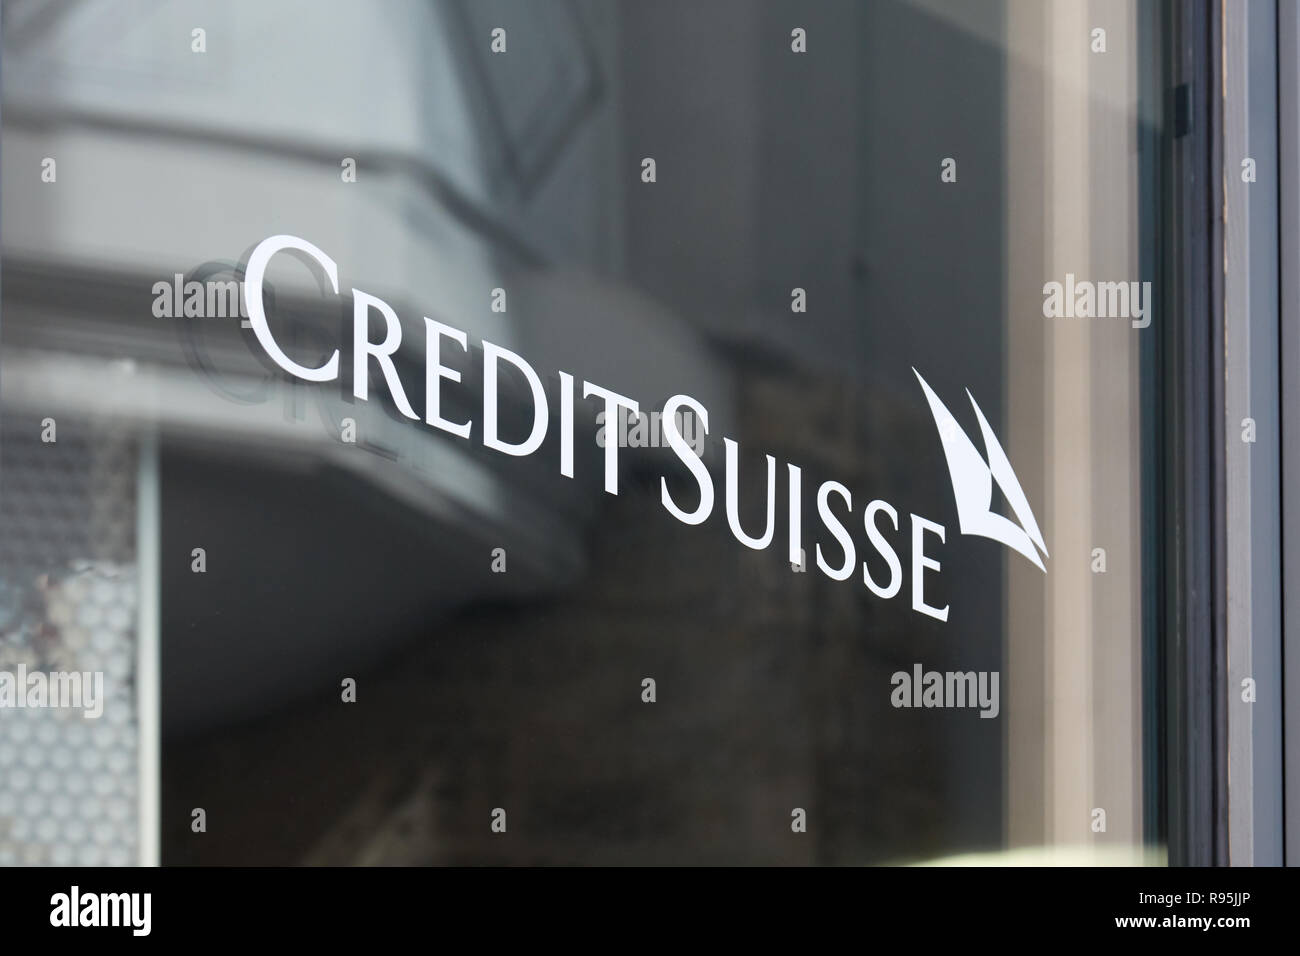 SANKT MORITZ, SWITZERLAND - AUGUST 16, 2018: Credit Suisse, swiss bank sign on window in Sankt Moritz, Switzerland Stock Photo